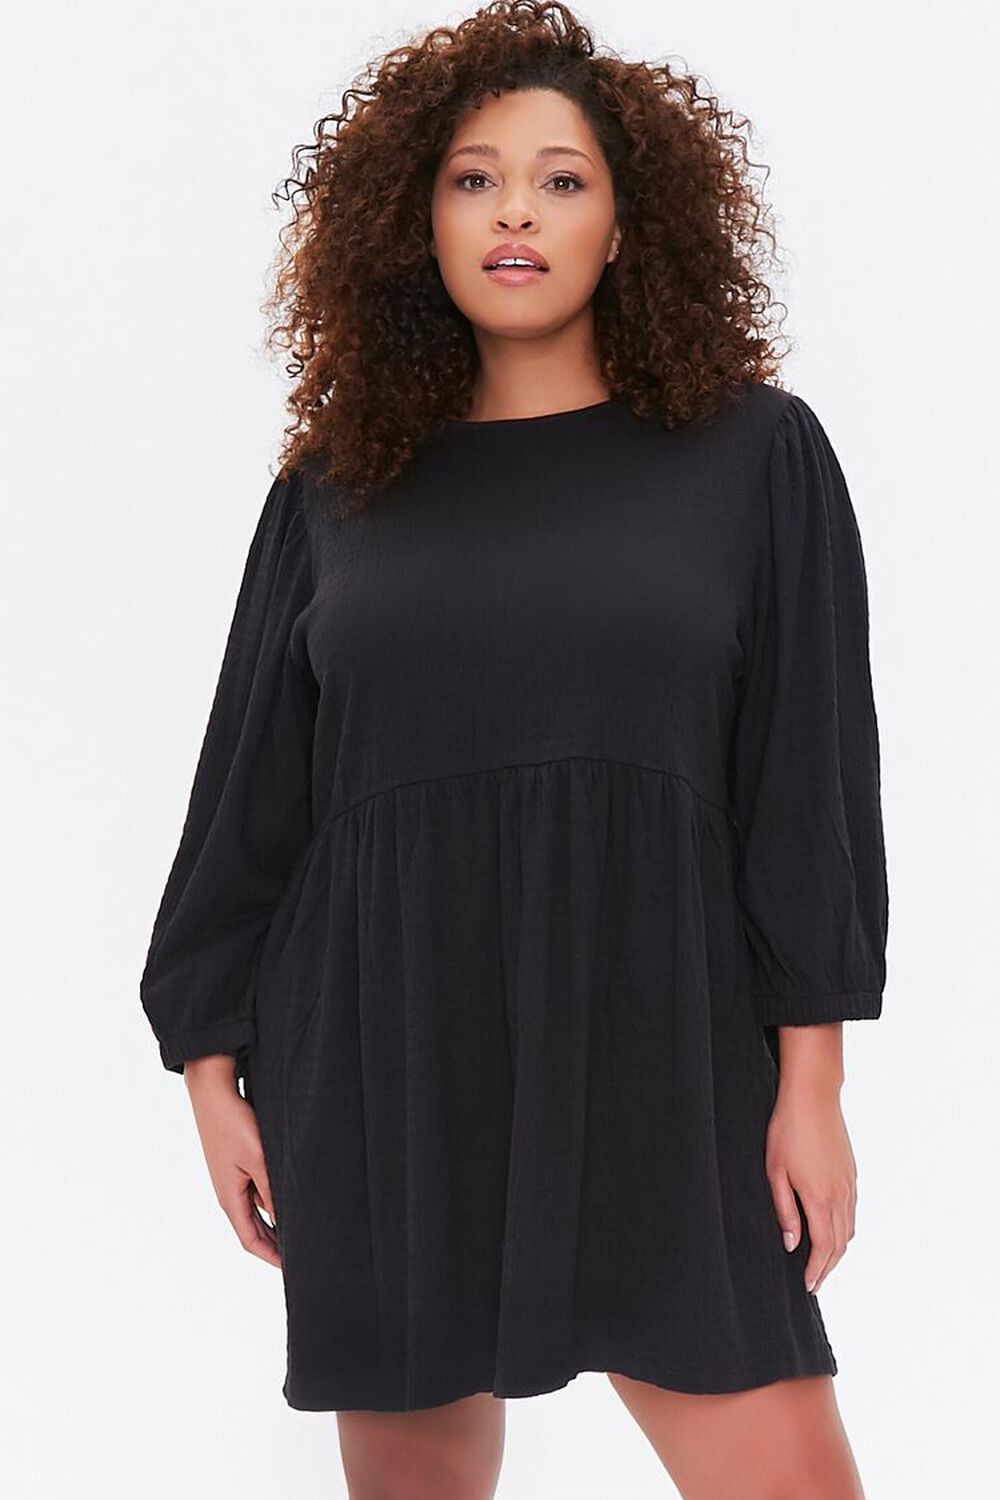 BLACK Plus Size Textured Mini Dress, image 1